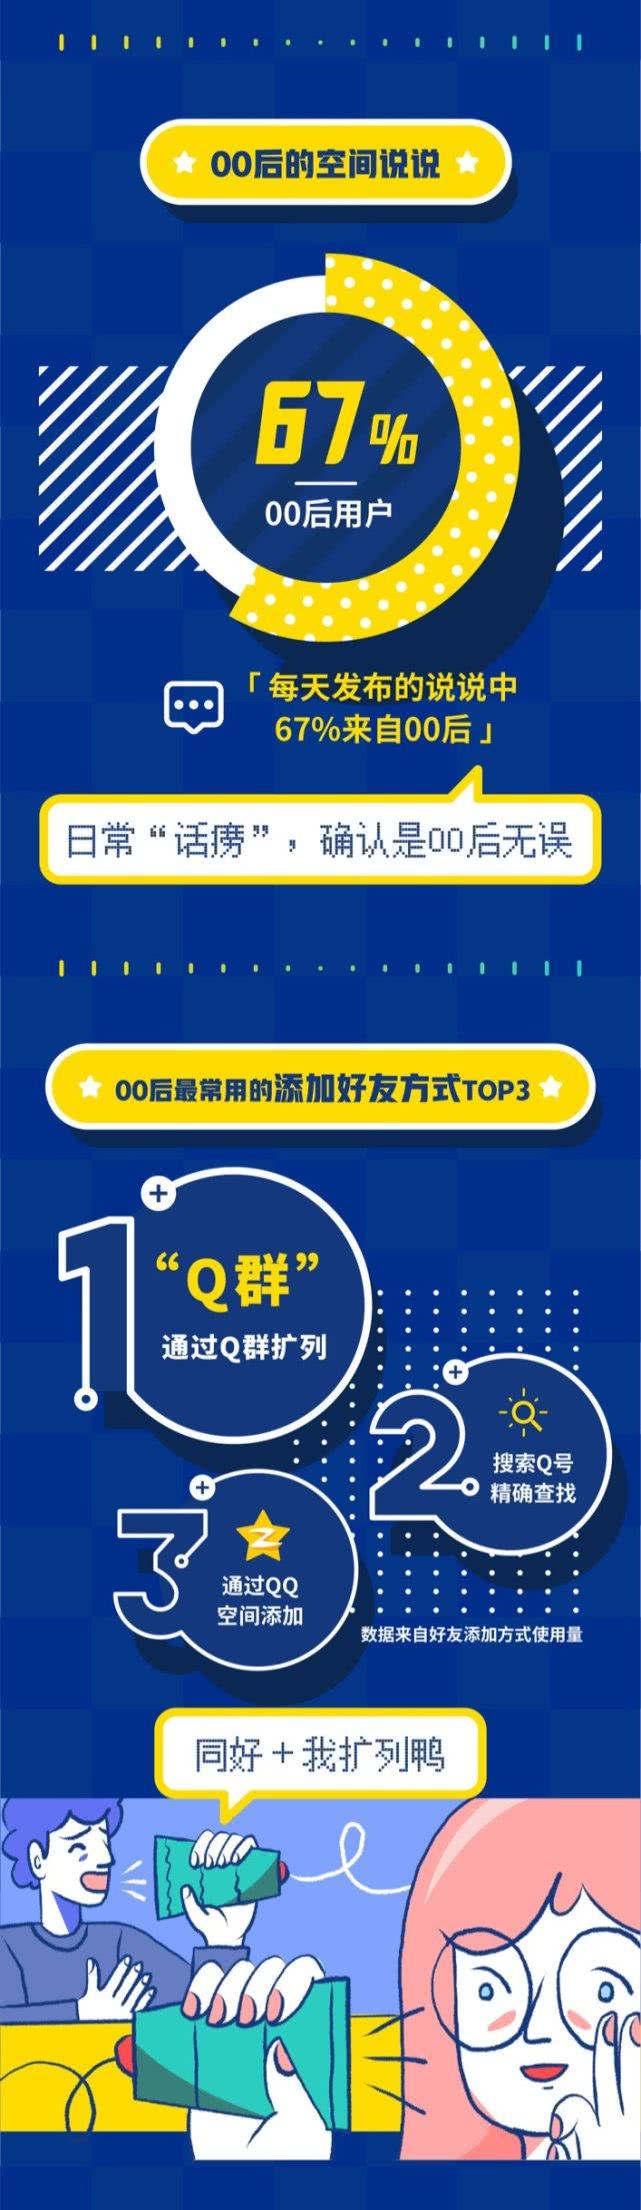 QQ发布《00后数据报告》 最爱聊的明星是朱一龙